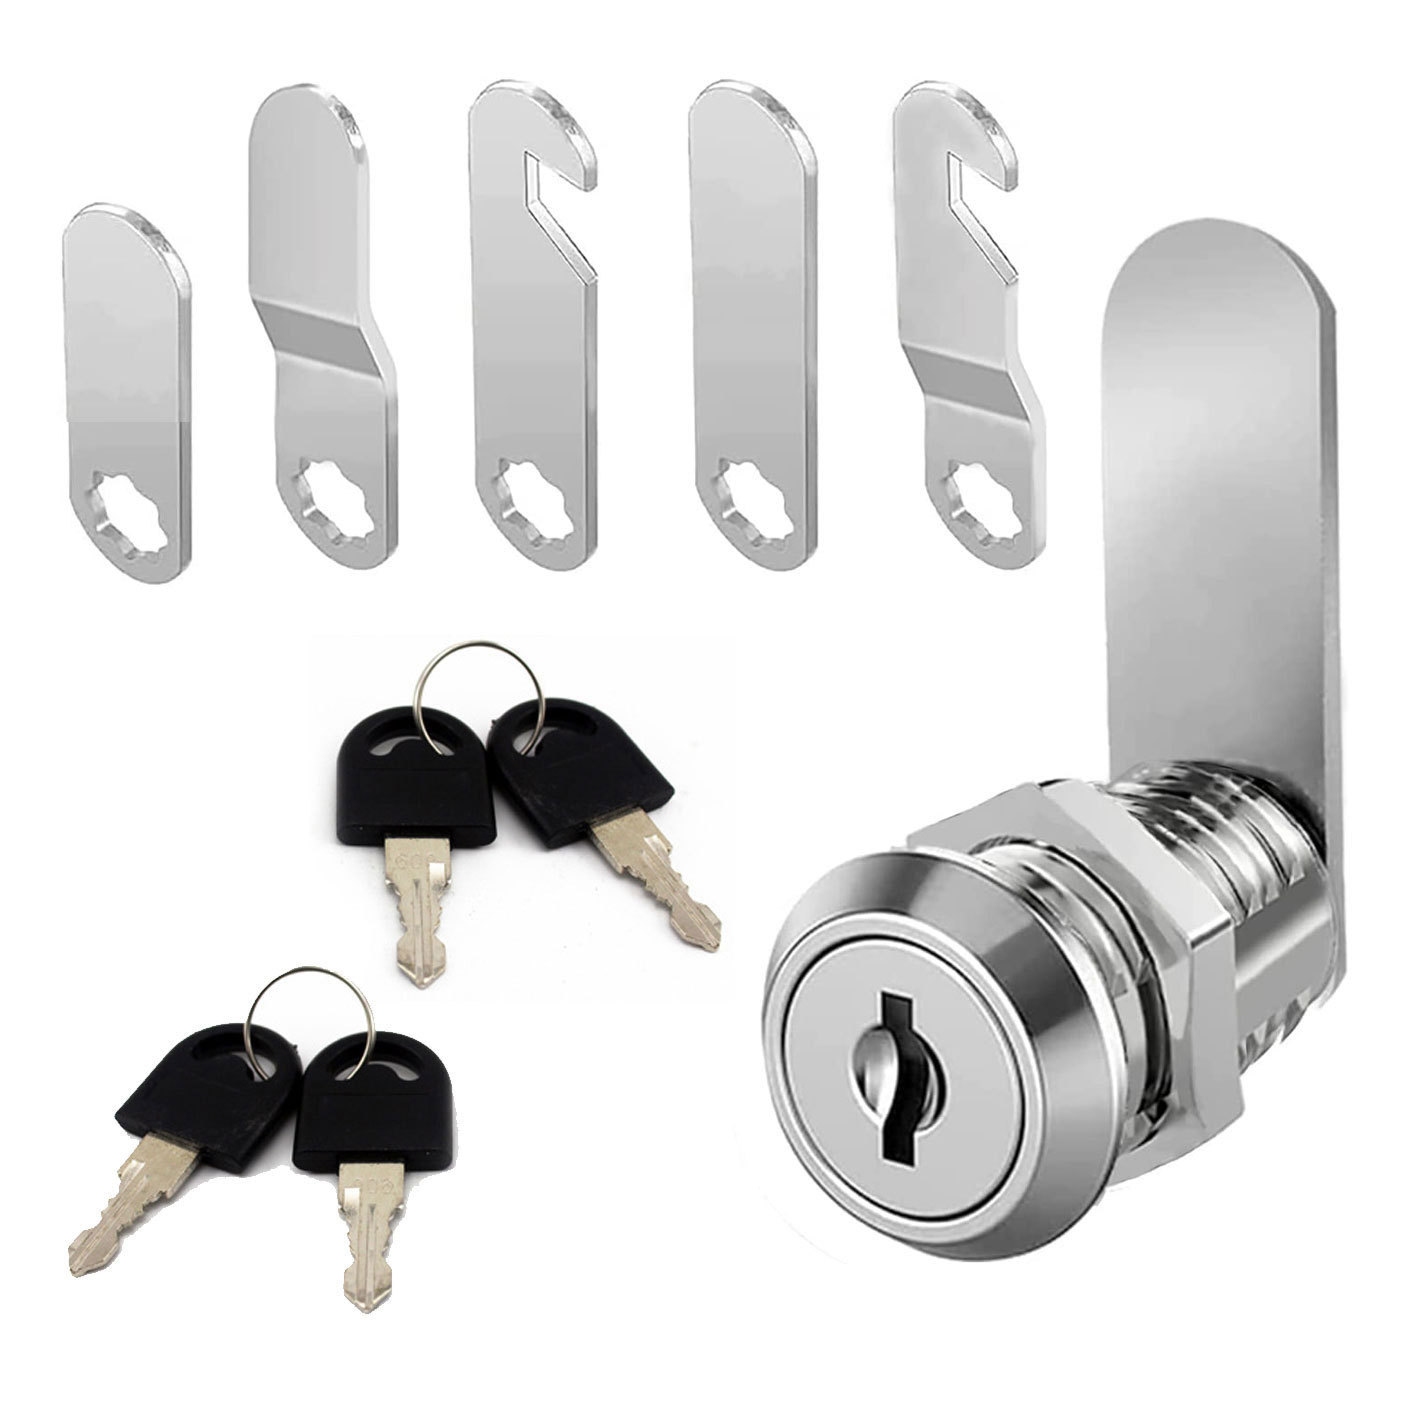 4个钥匙 5个片 C1820 通开转舌锁 RV LOCK 房车锁 信箱锁 衣柜锁